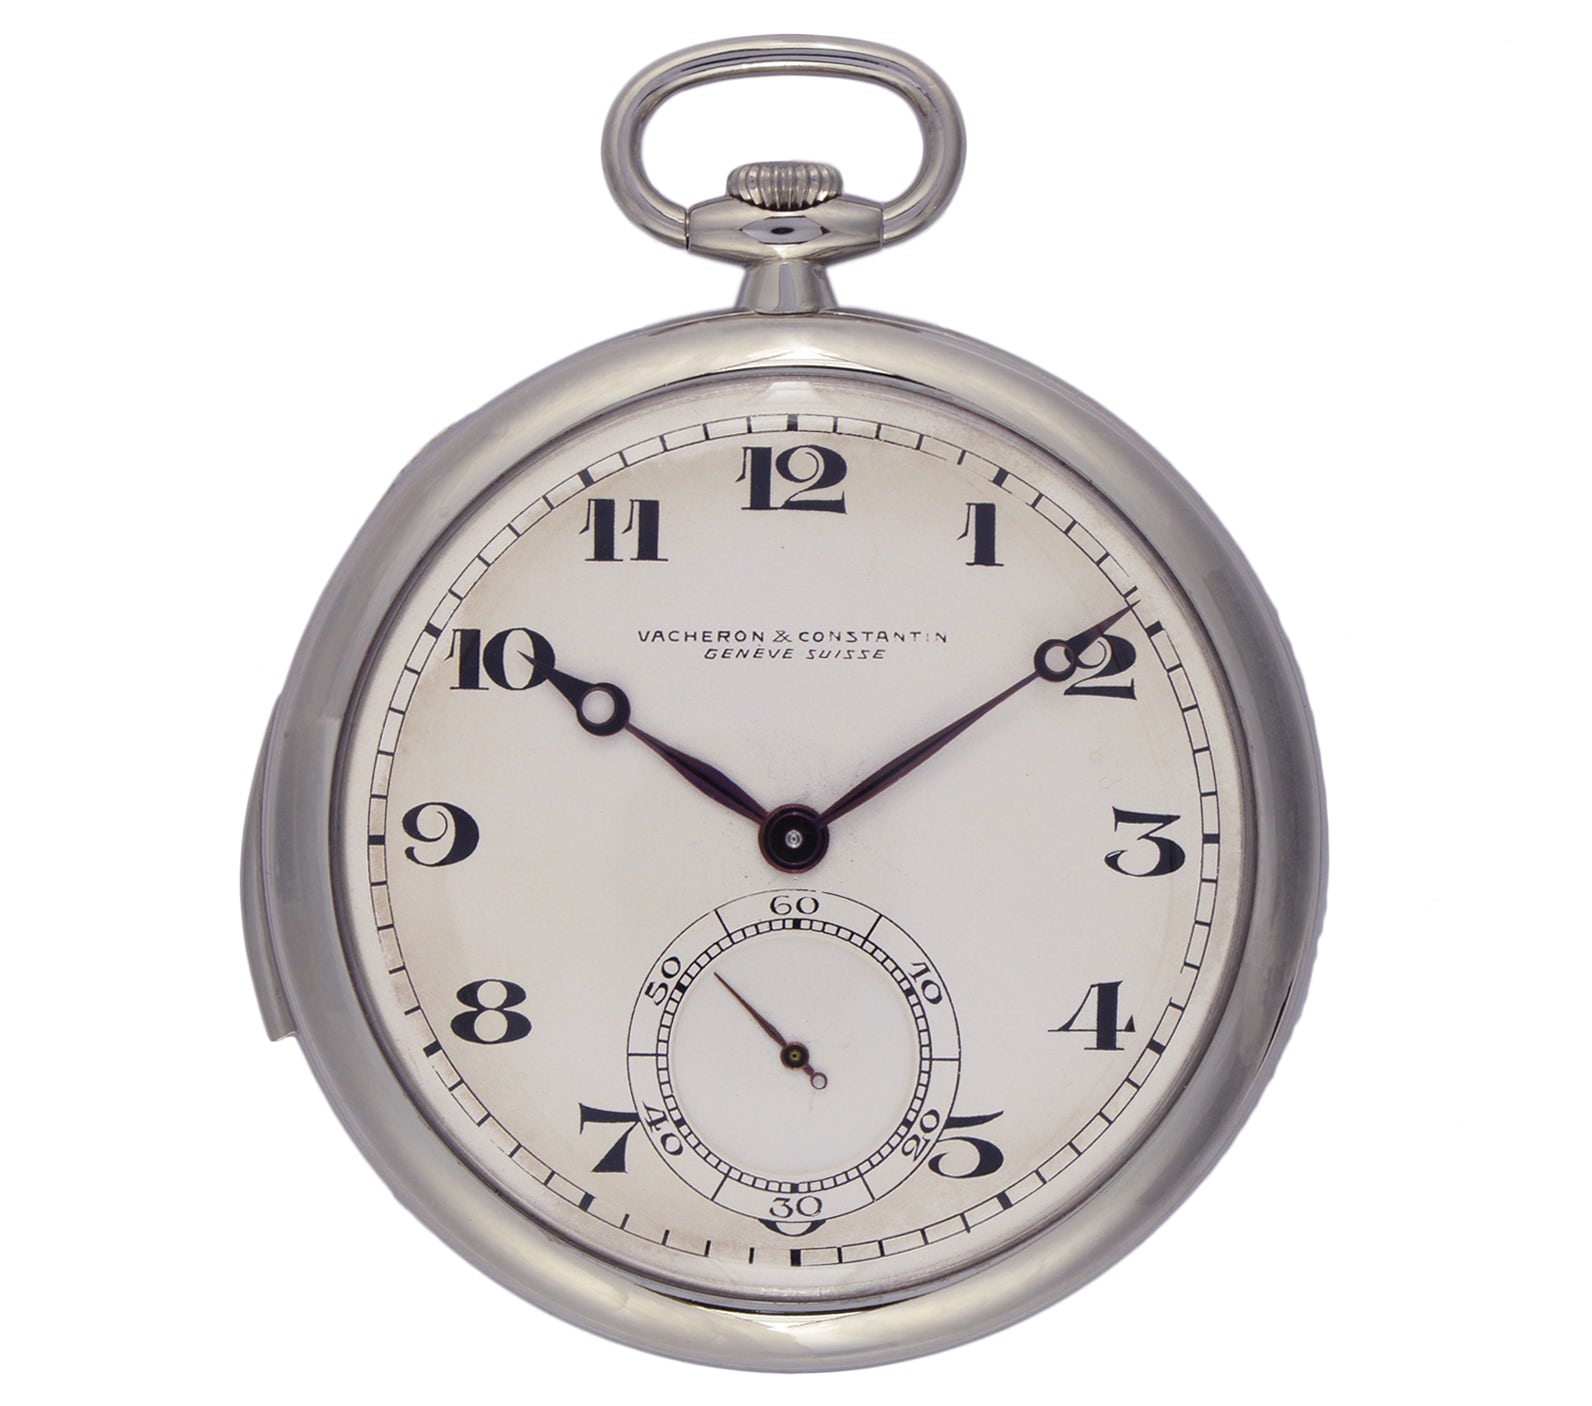 Ультратонкие карманные часы с минутным репетиром, 1928 г. Выставлены в Нью-Йорке